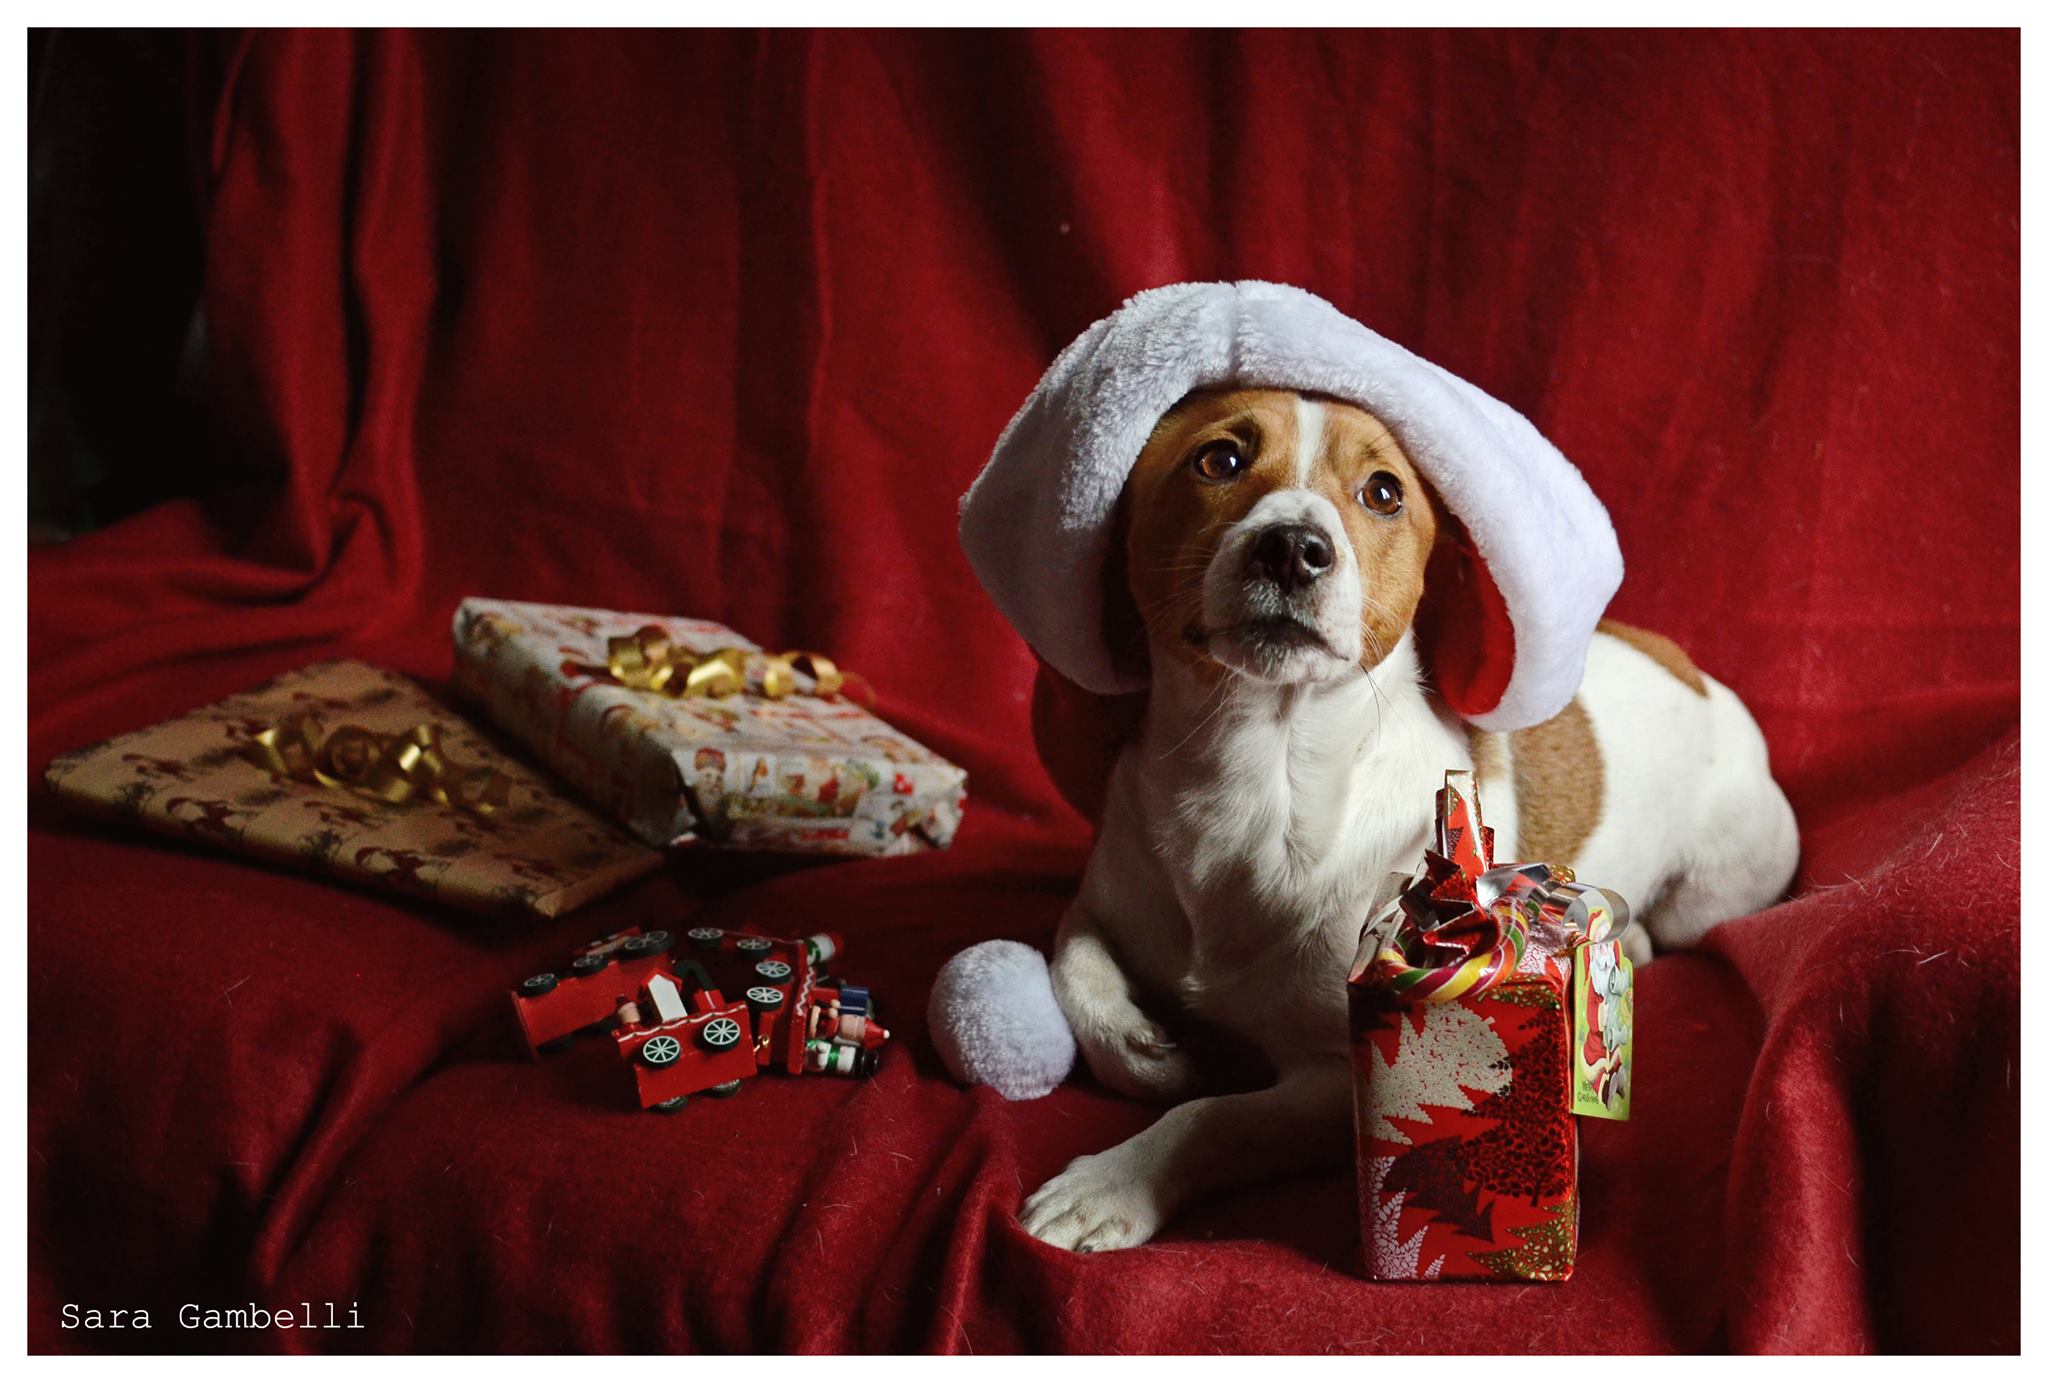 I Nostri Migliori Auguri Di Buon Natale Con Le Foto Canine E Feline Di Sara Gambelli